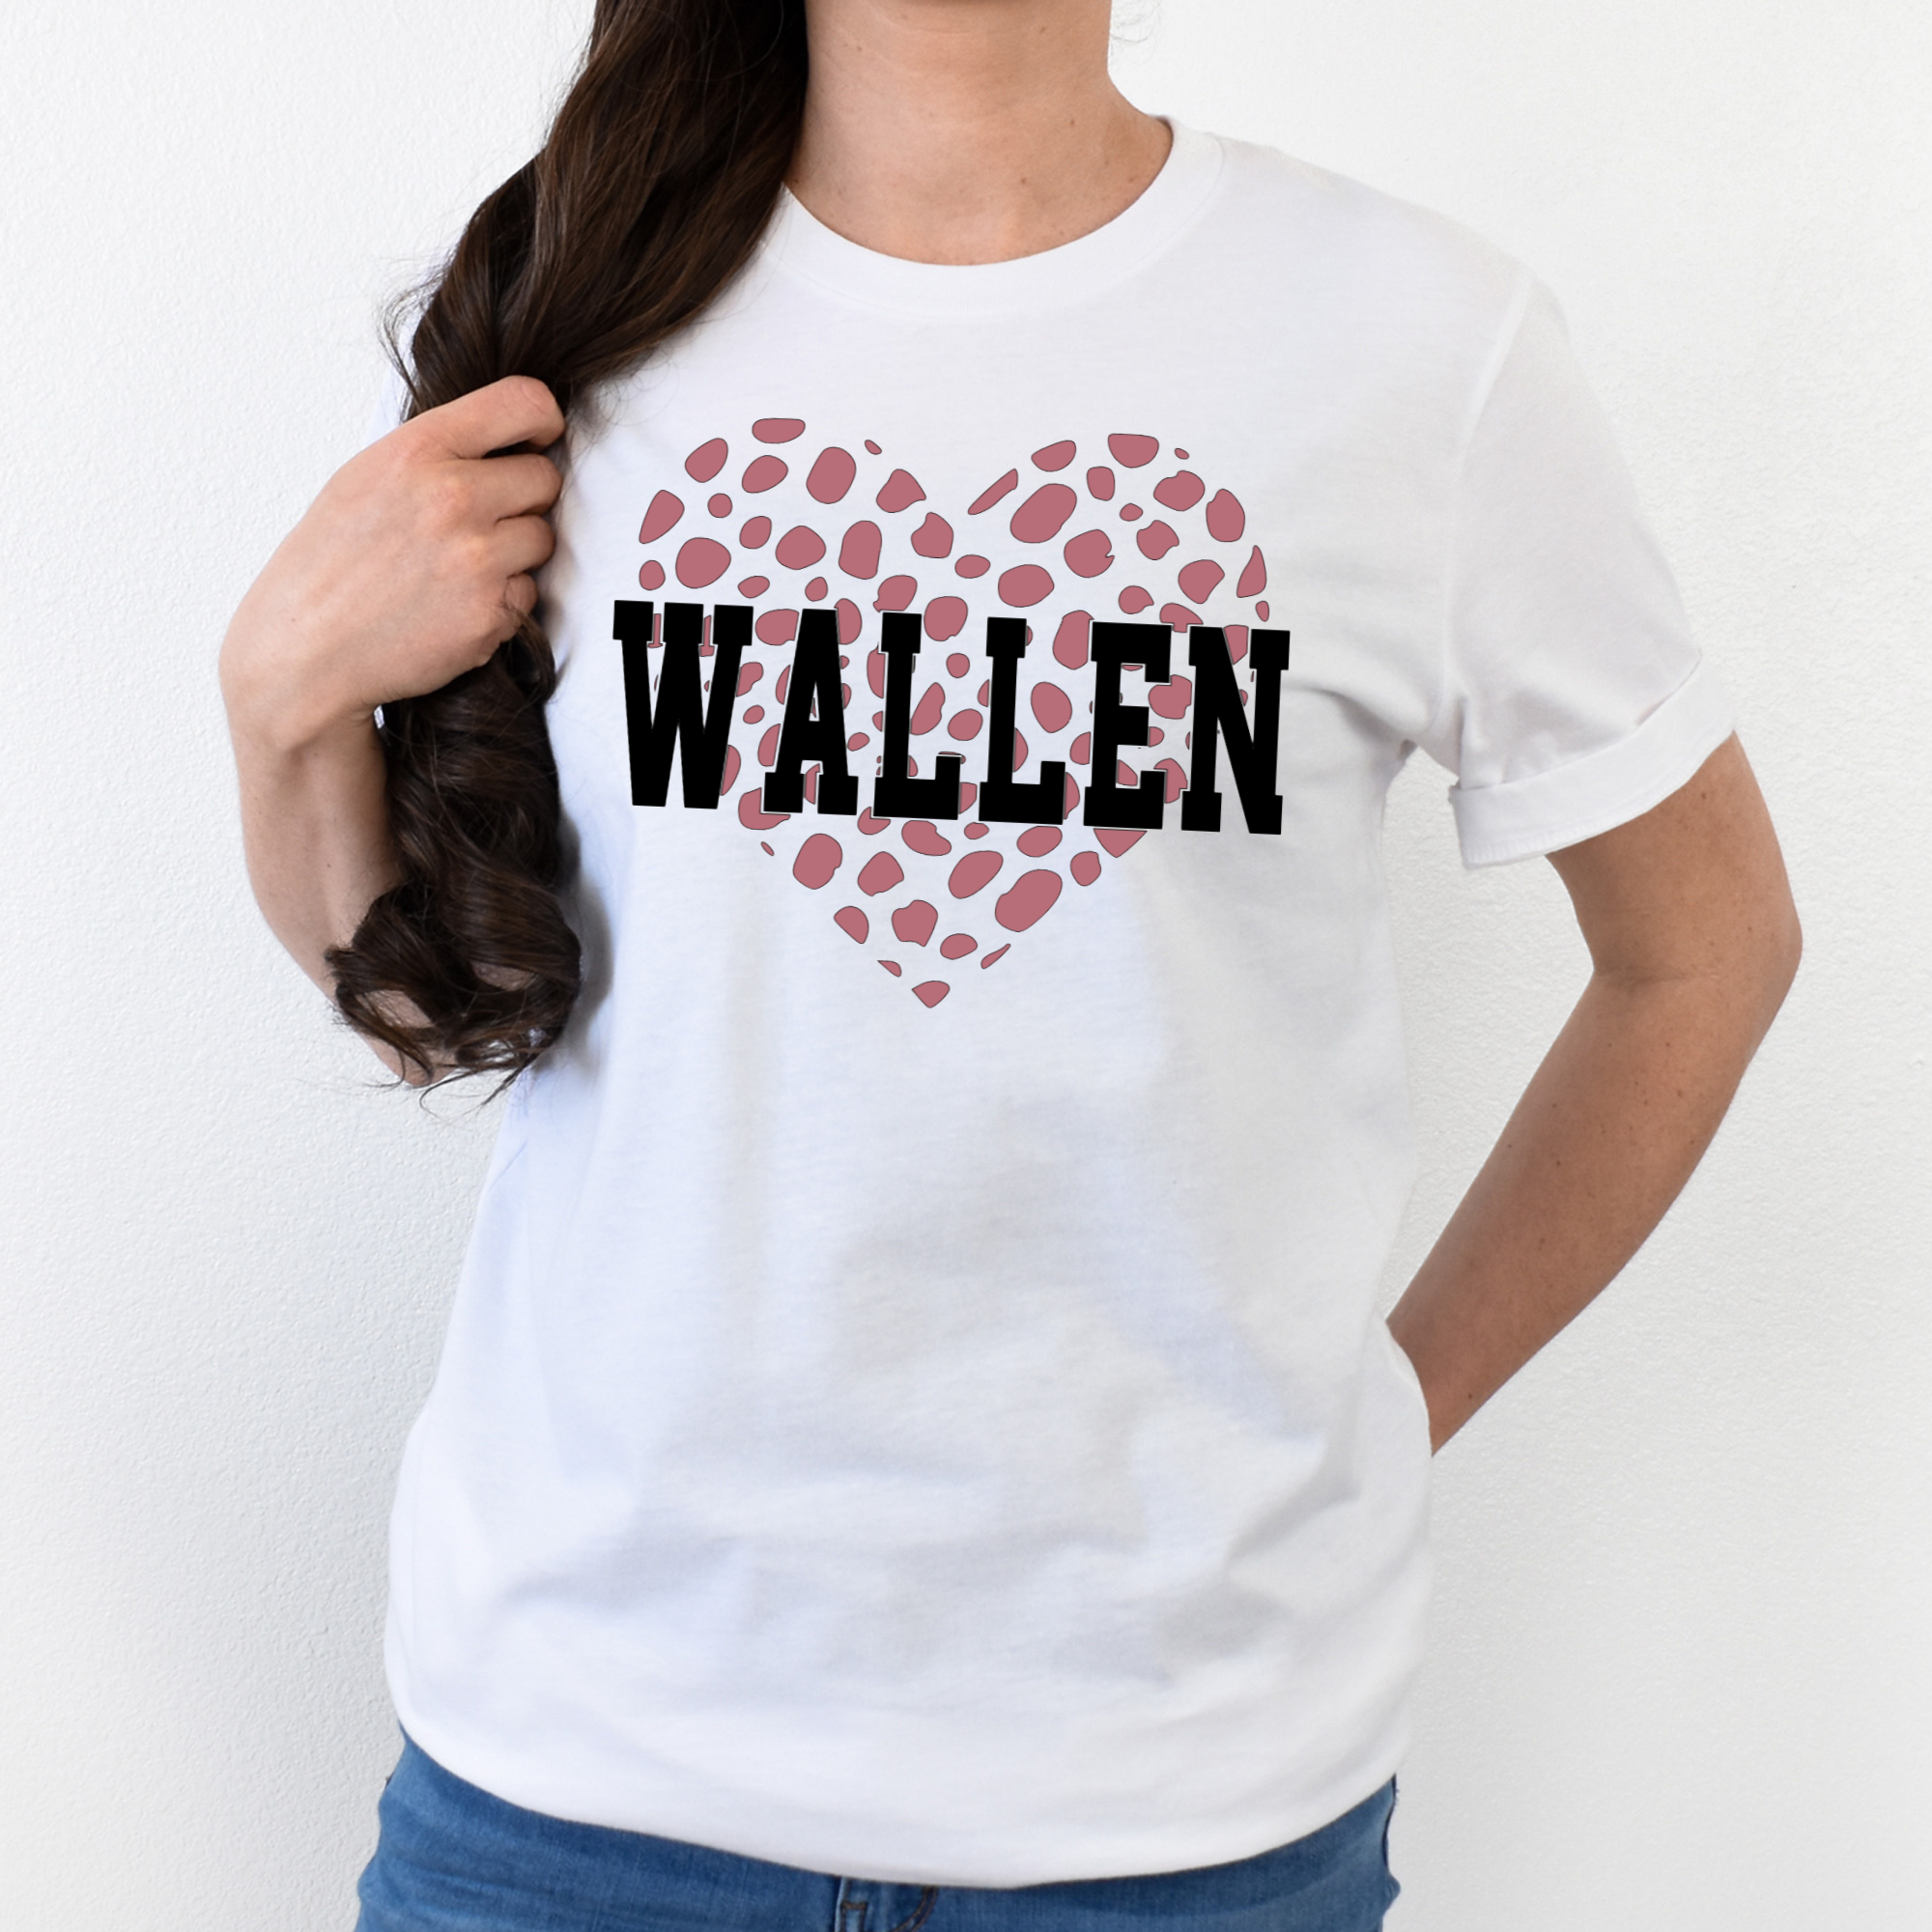 Wallen Leopard Print Heart Shirt